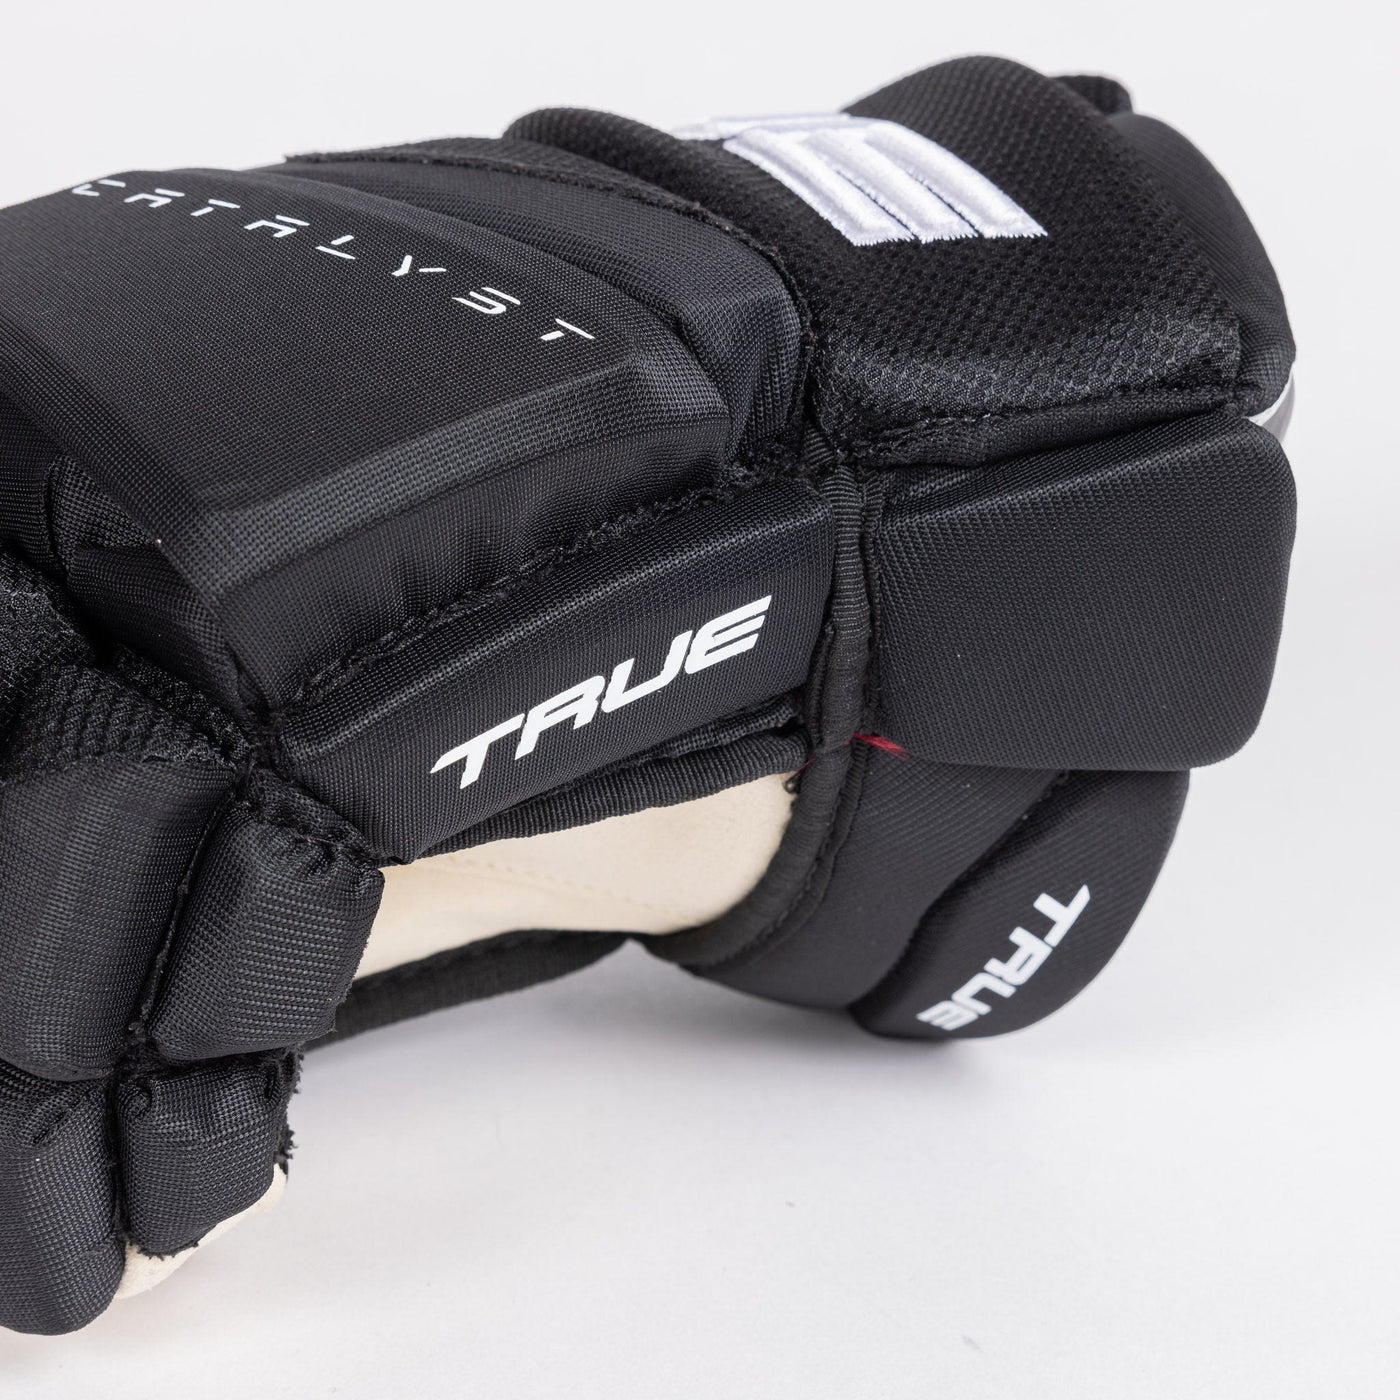 TRUE Catalyst Pro Stock Senior Hockey Glove - Arizona - The Hockey Shop Source For Sports